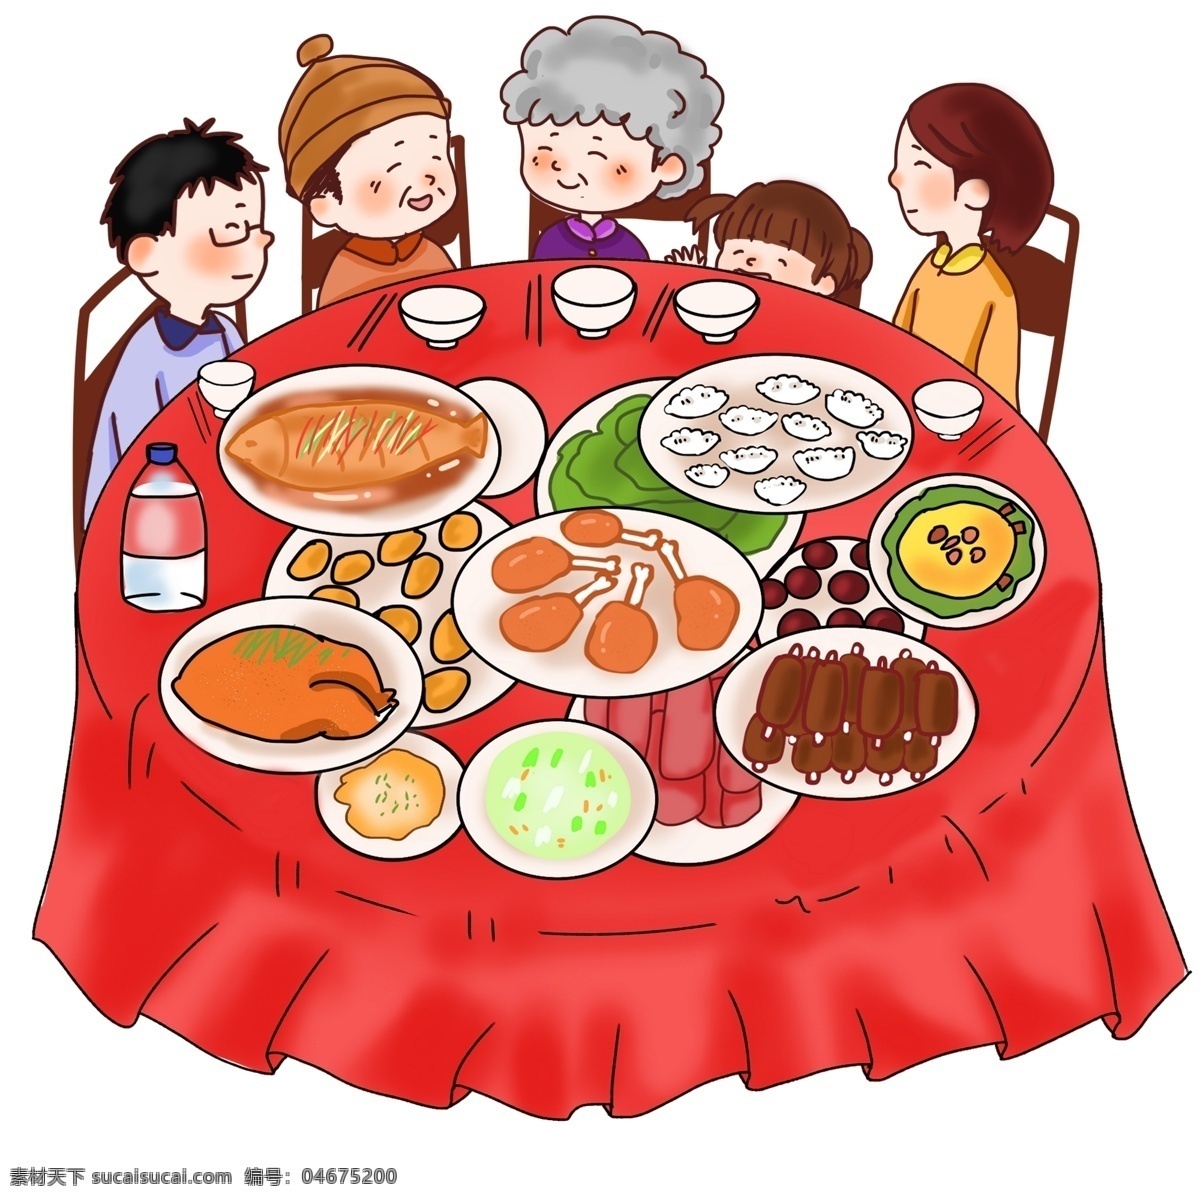 春节 年夜饭 团圆饭 贺新年 一家人 幸福美满 红色的桌子 木头凳子 餐具 美食美味 营养健康 年夜饭插画